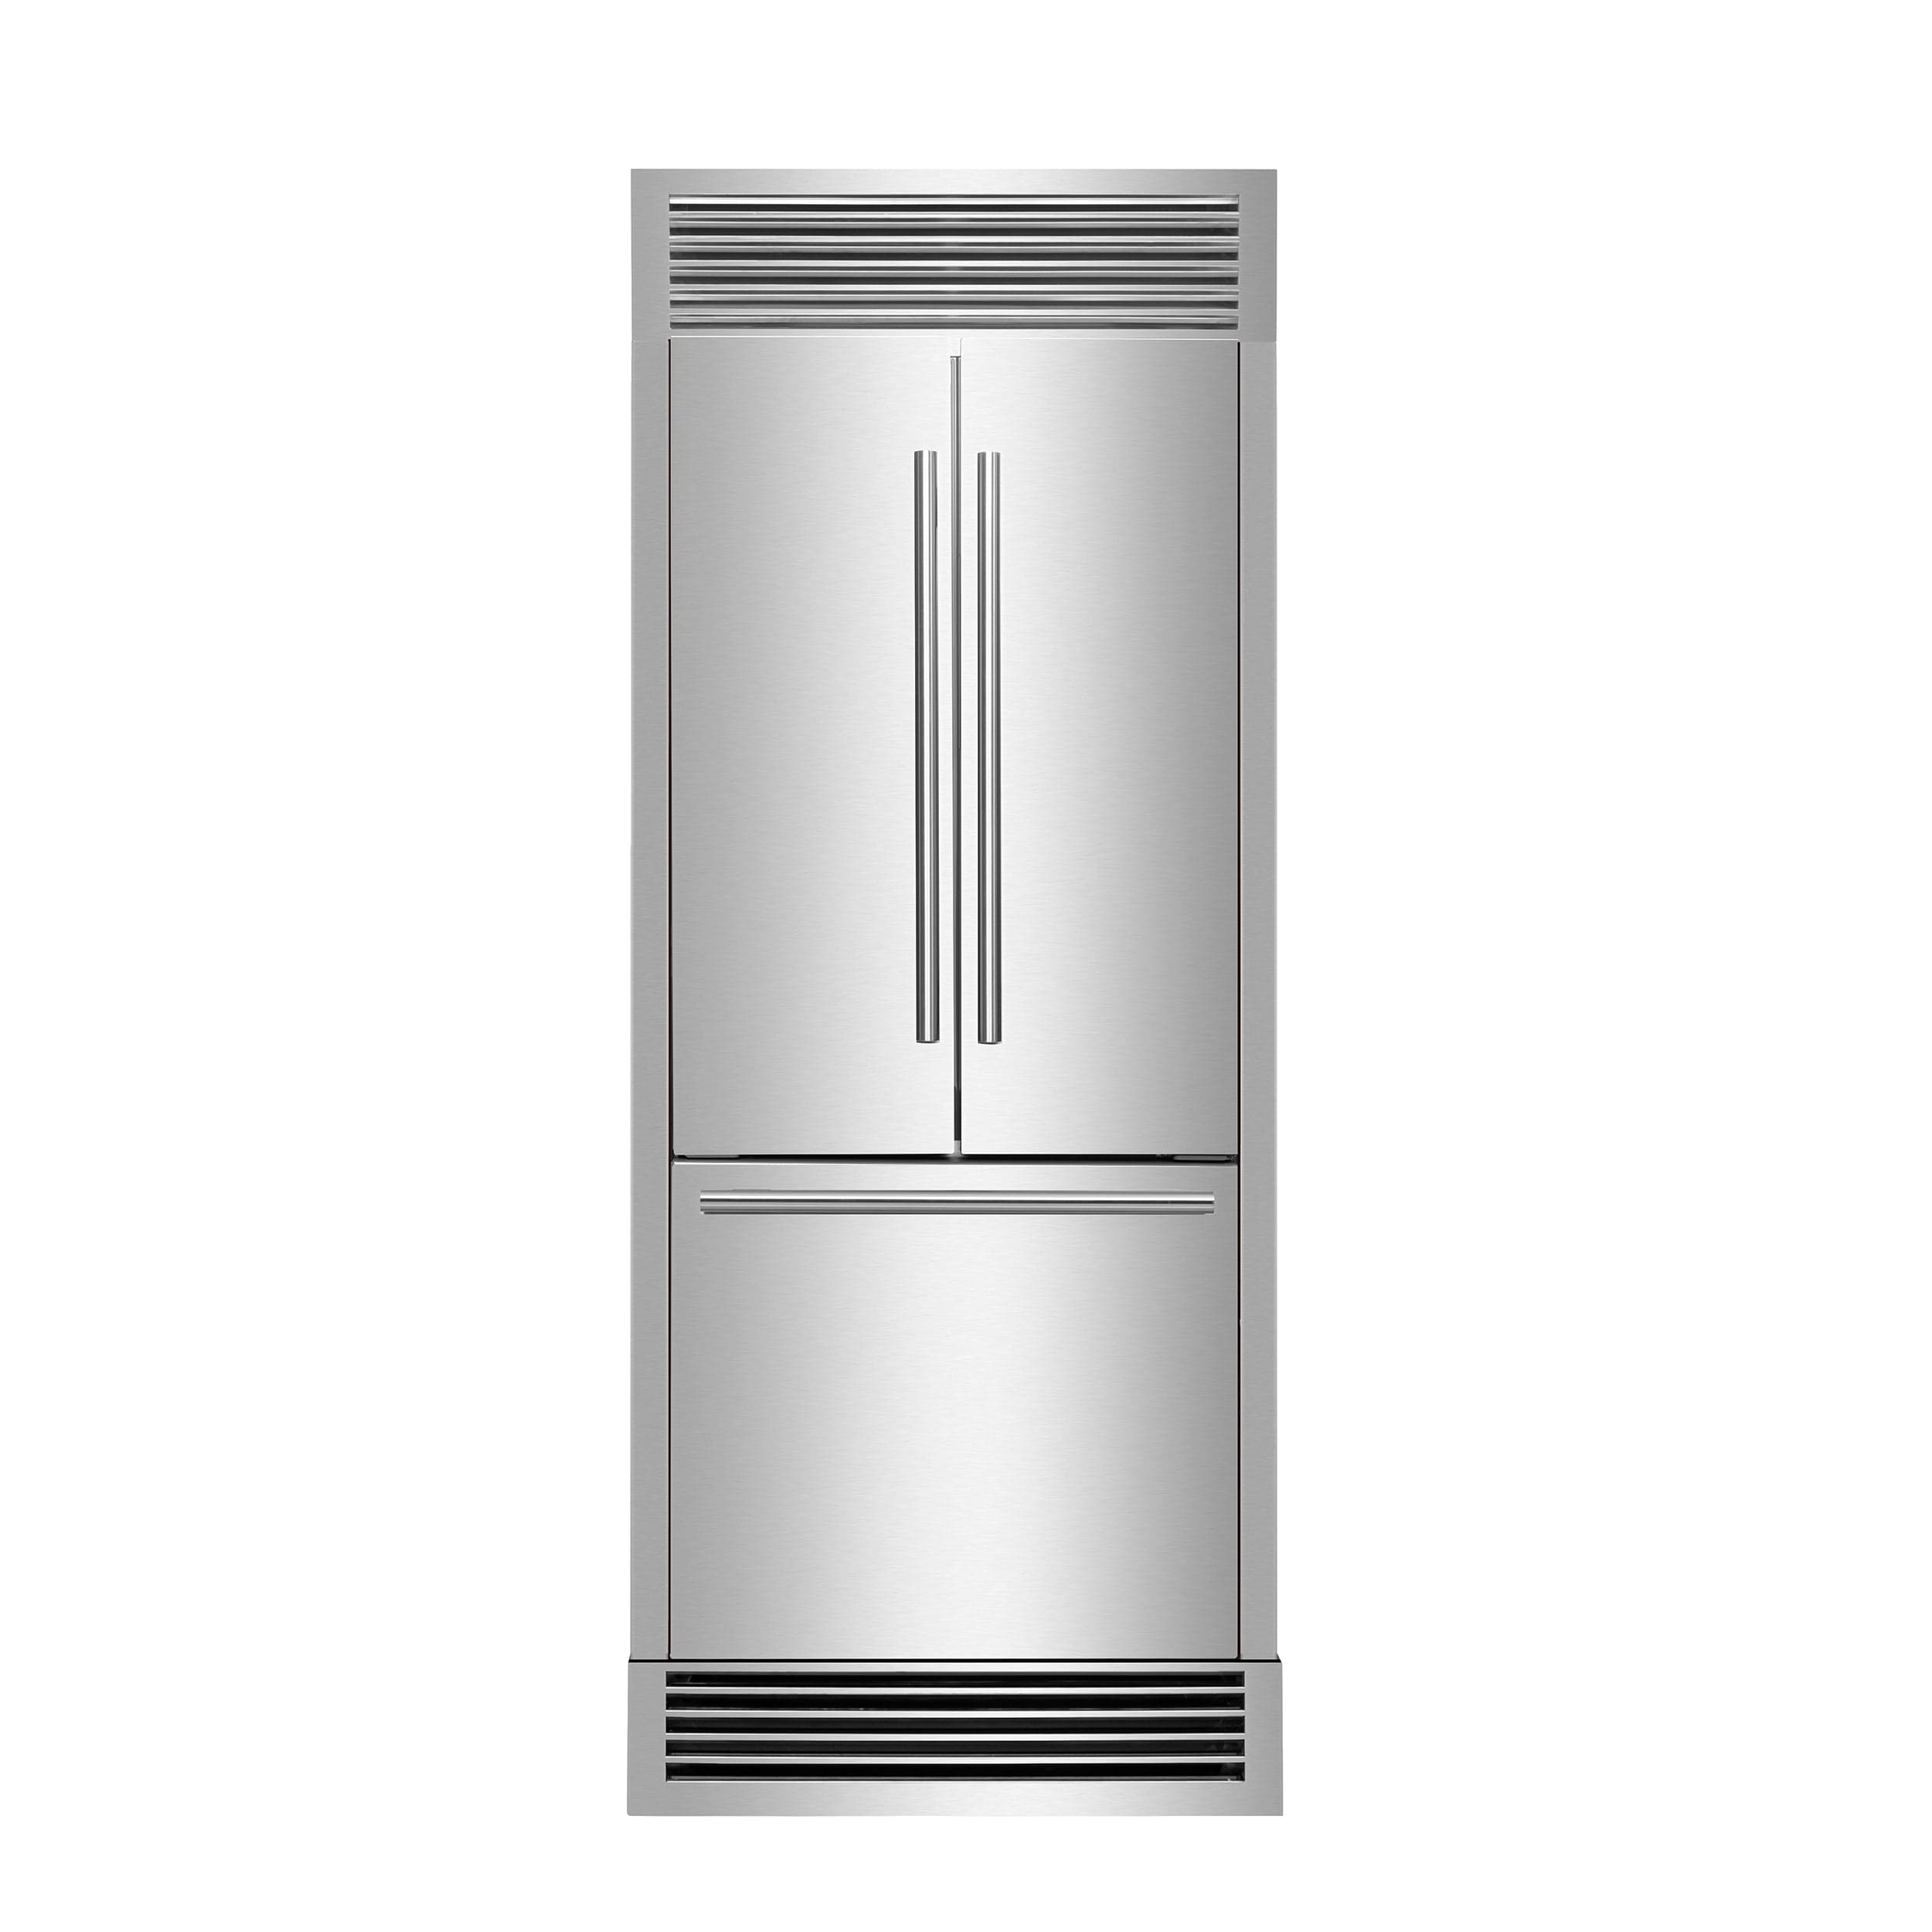 Forno Gallipoli 30" French Door With Grill Trim FFFFD1974-35SG Refrigerators FFFFD1974-35SG Luxury Appliances Direct